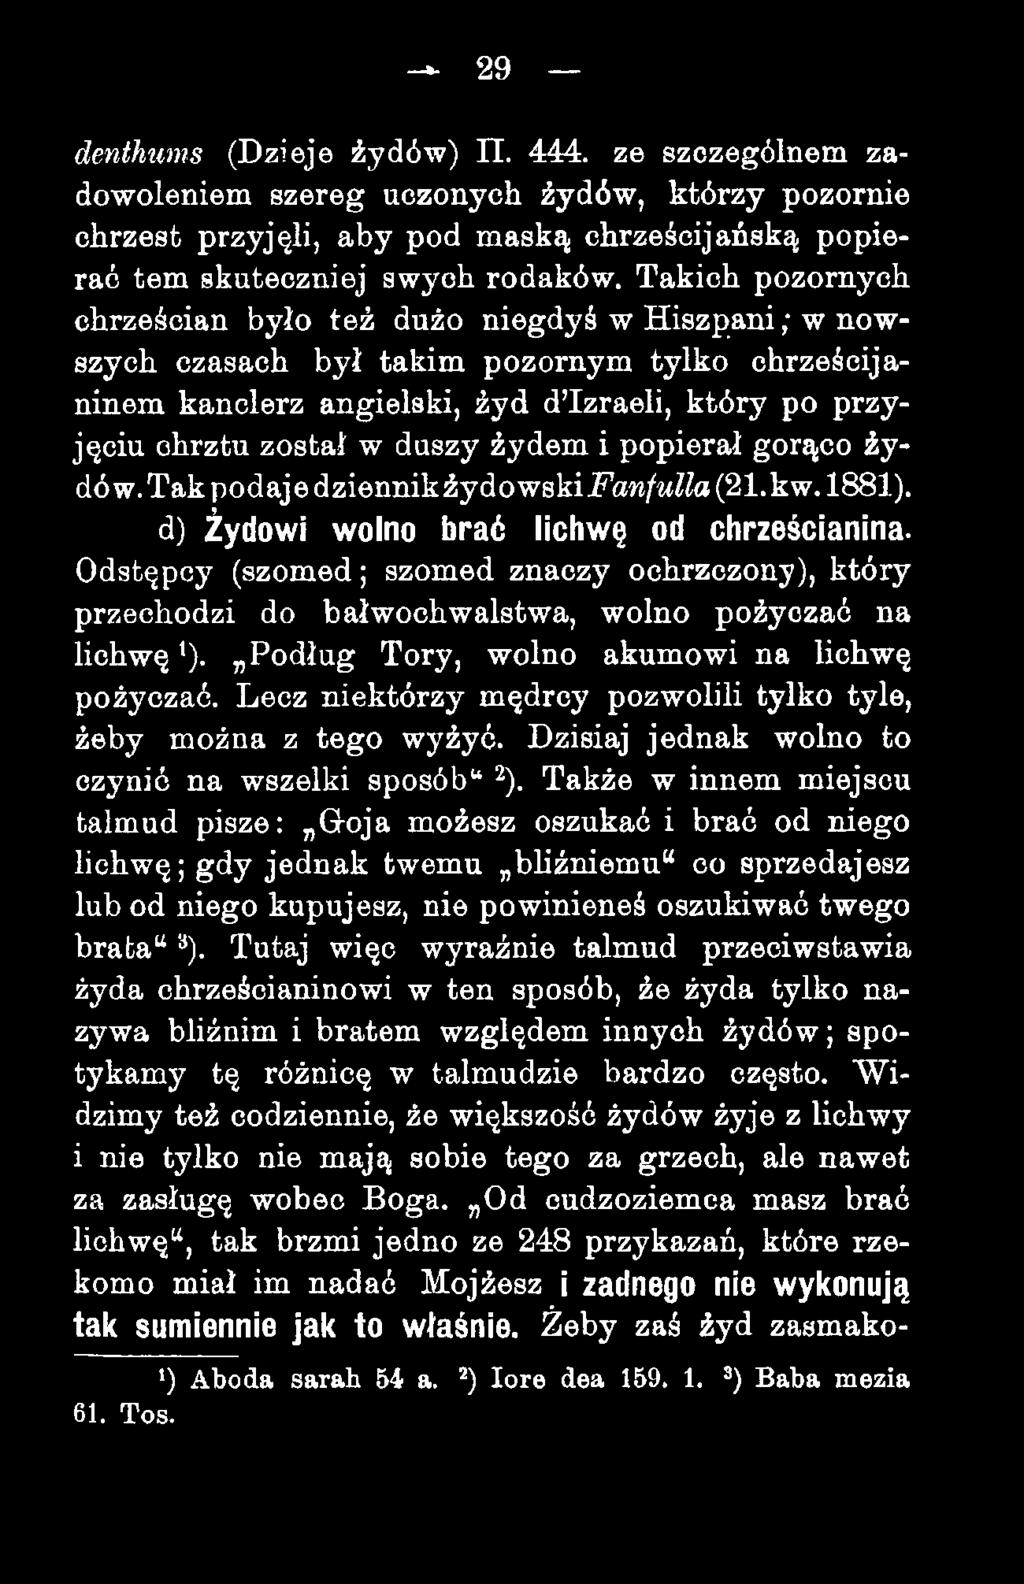 żydem i popierał gorąco żydów. Tak podaje dziennikźydowskijpaw/wz?a (21. kw. 1881). d) Żydowi wolno brać lichwę od chrześcianina.